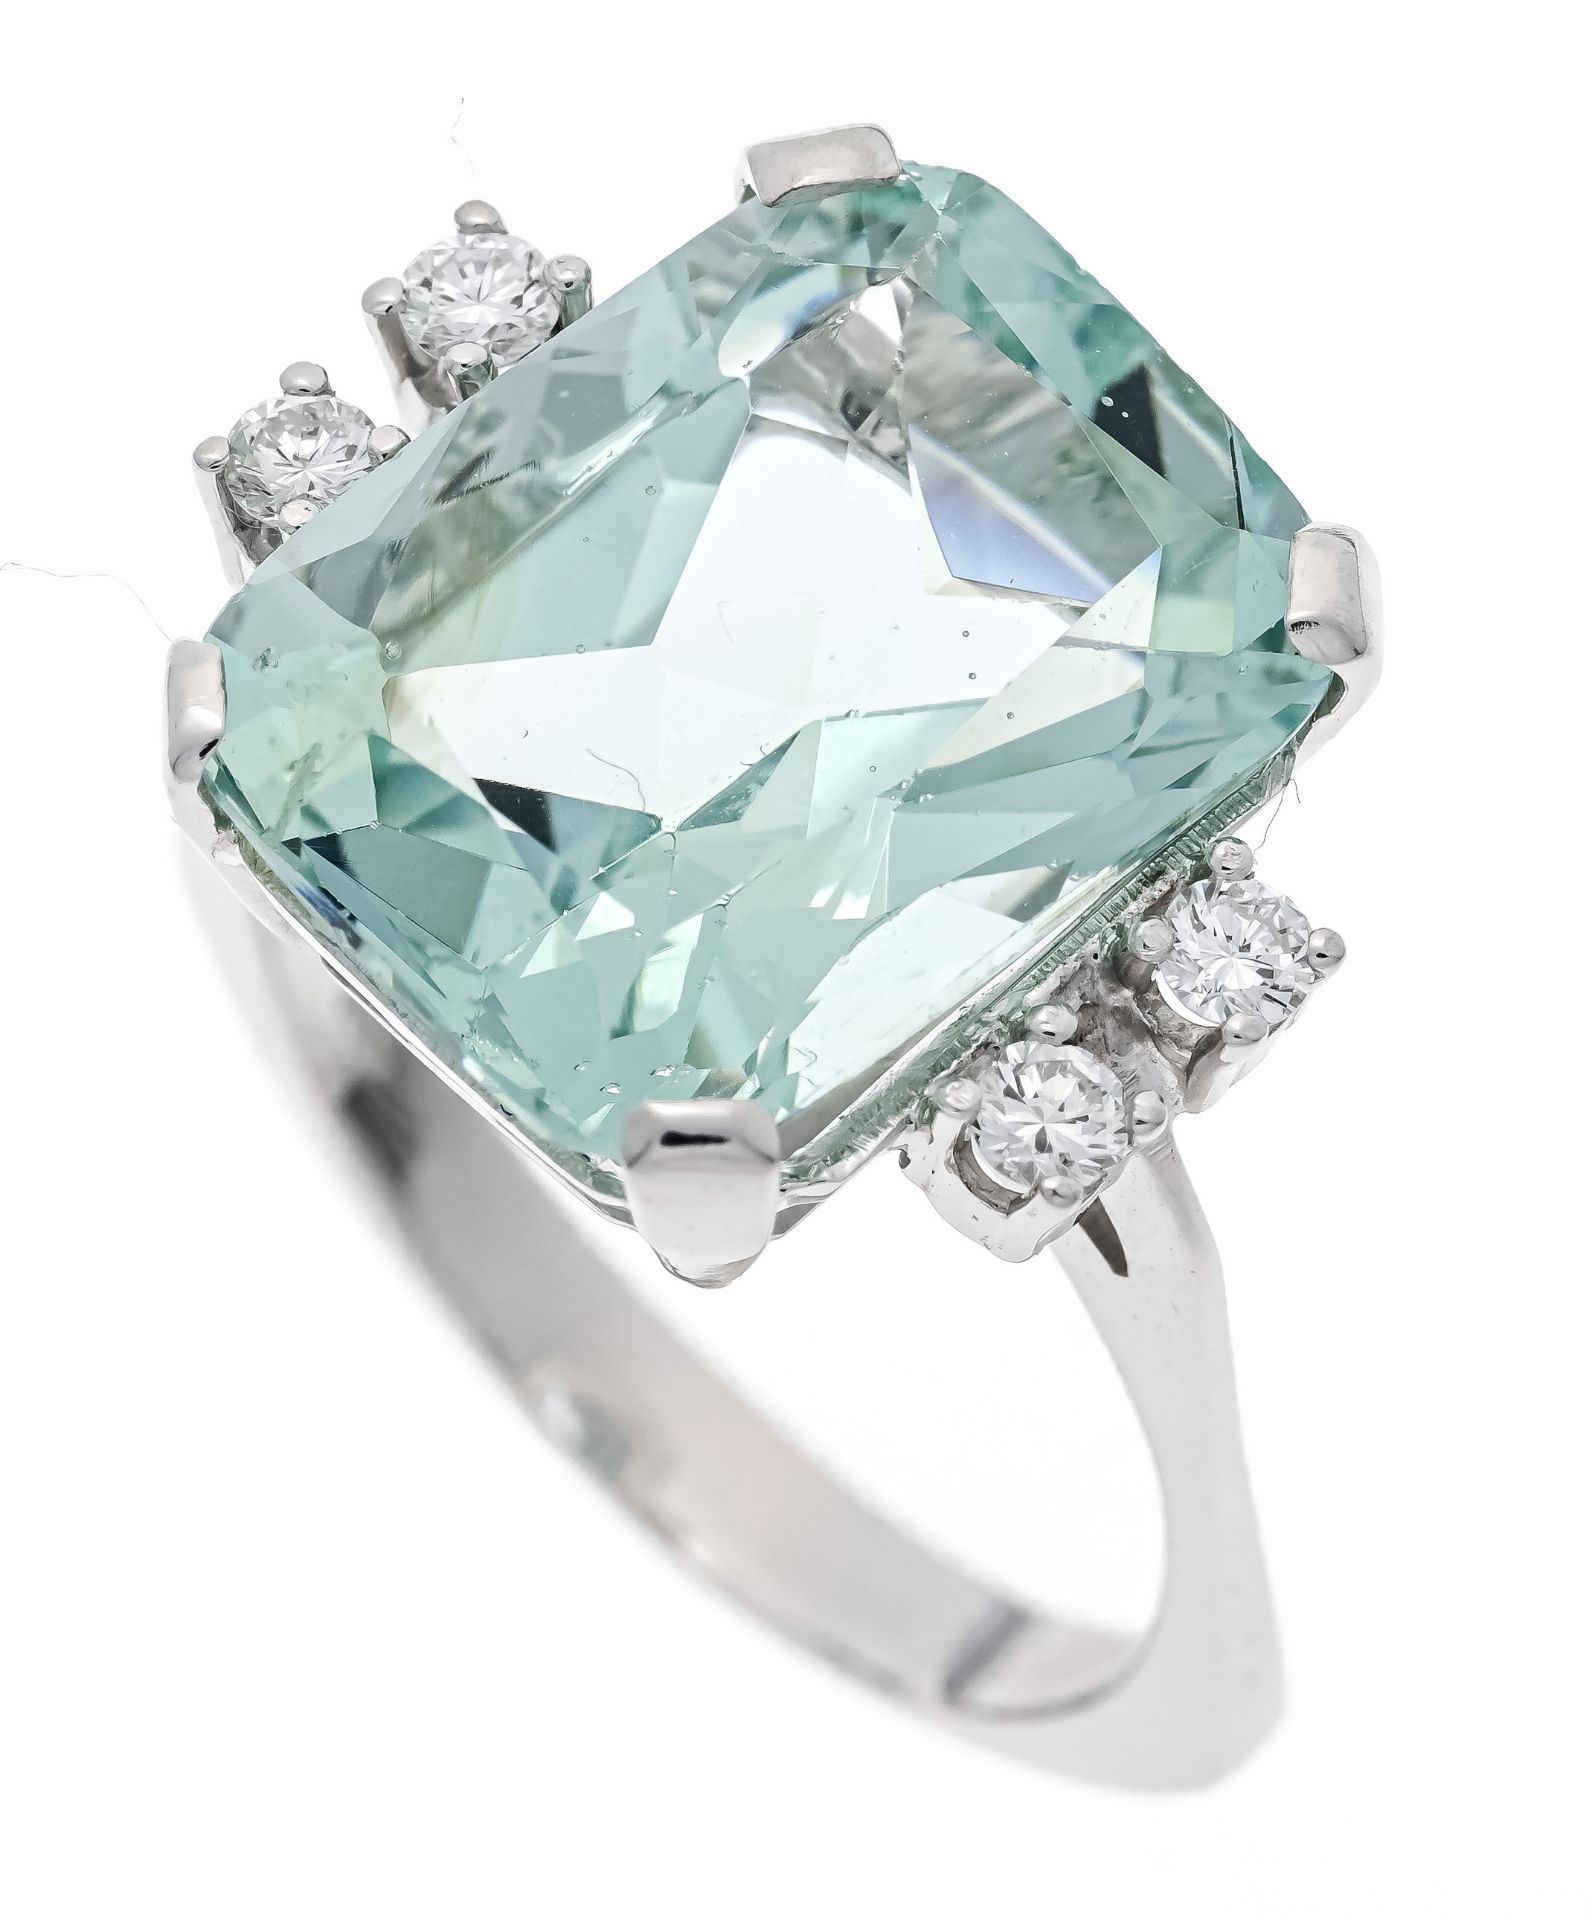 Aquamarine brilliant-cut diamond ring WG 585/000 with an excellent scissor-cut aquamarine, faceted